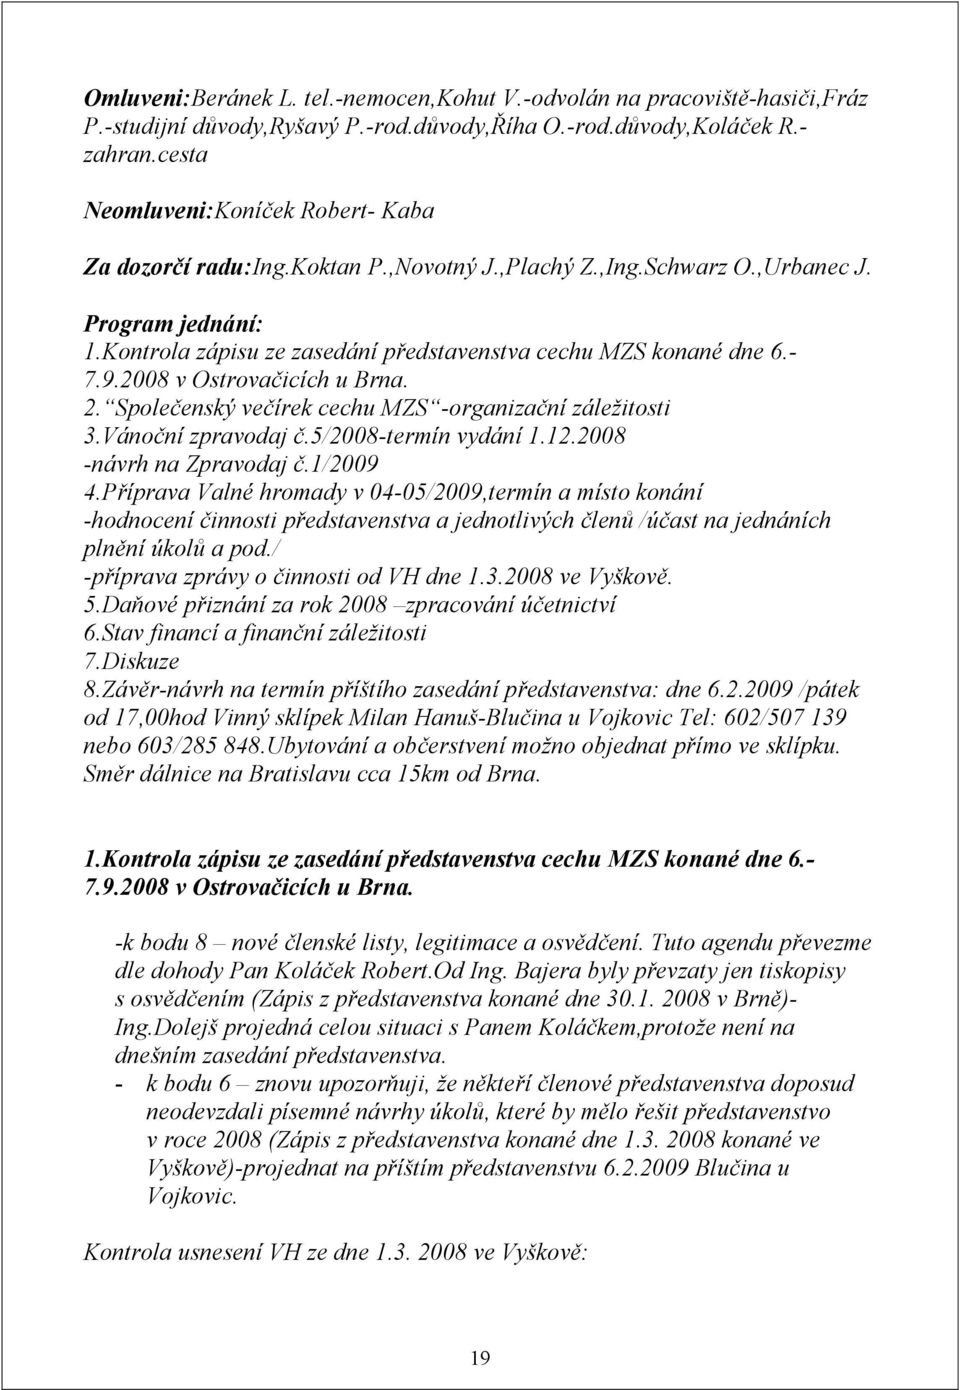 - 7.9.2008 v Ostrovačicích u Brna. 2. Společenský večírek cechu MZS -organizační záležitosti 3.Vánoční zpravodaj č.5/2008-termín vydání 1.12.2008 -návrh na Zpravodaj č.1/2009 4.